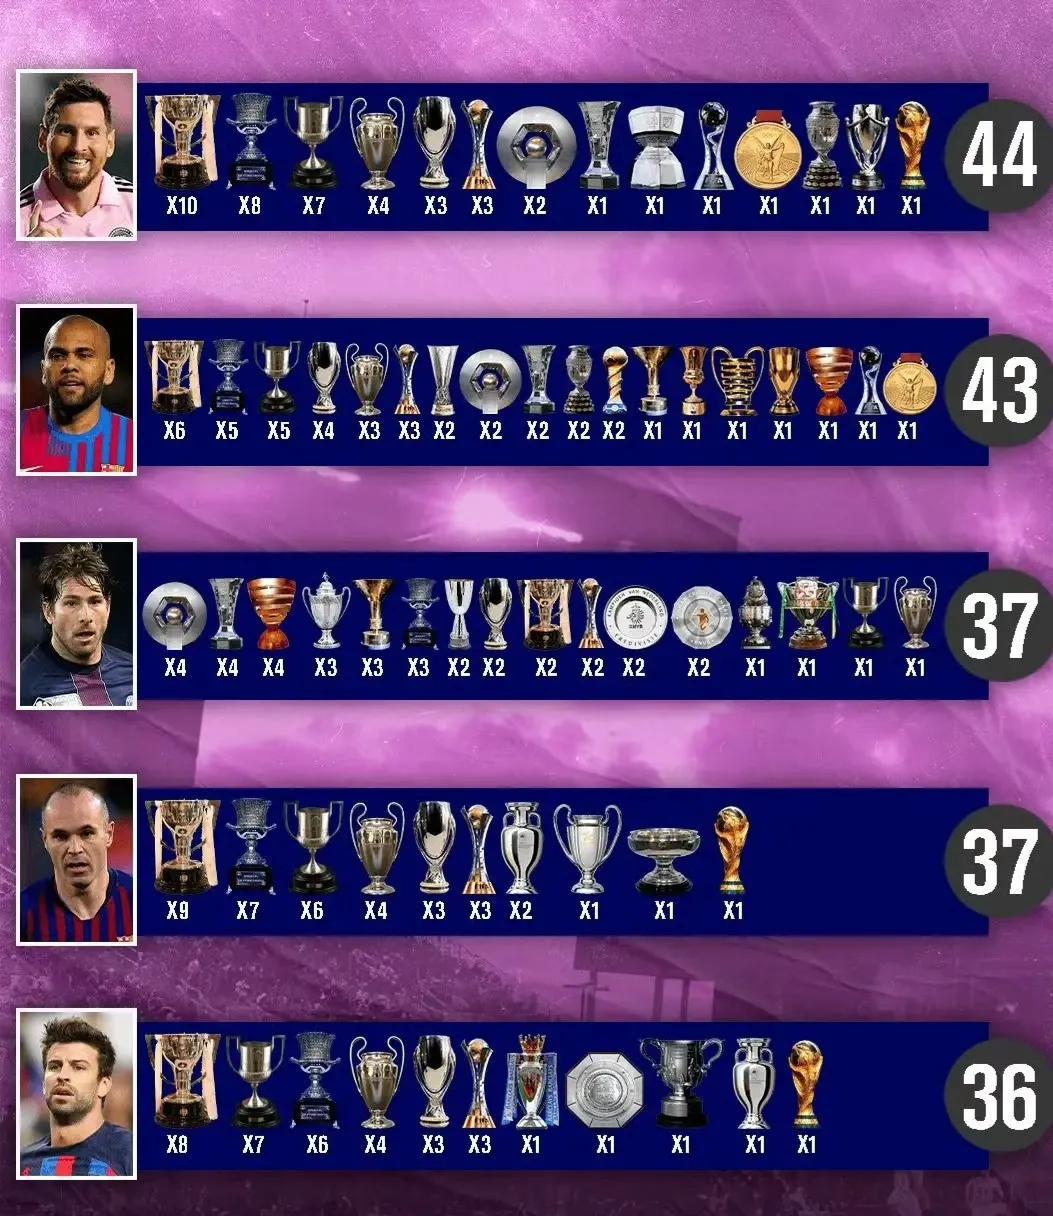 足球运动员冠军排行榜
1，梅西44冠 
2，阿尔维斯43冠  
3，马克斯维尔3(1)